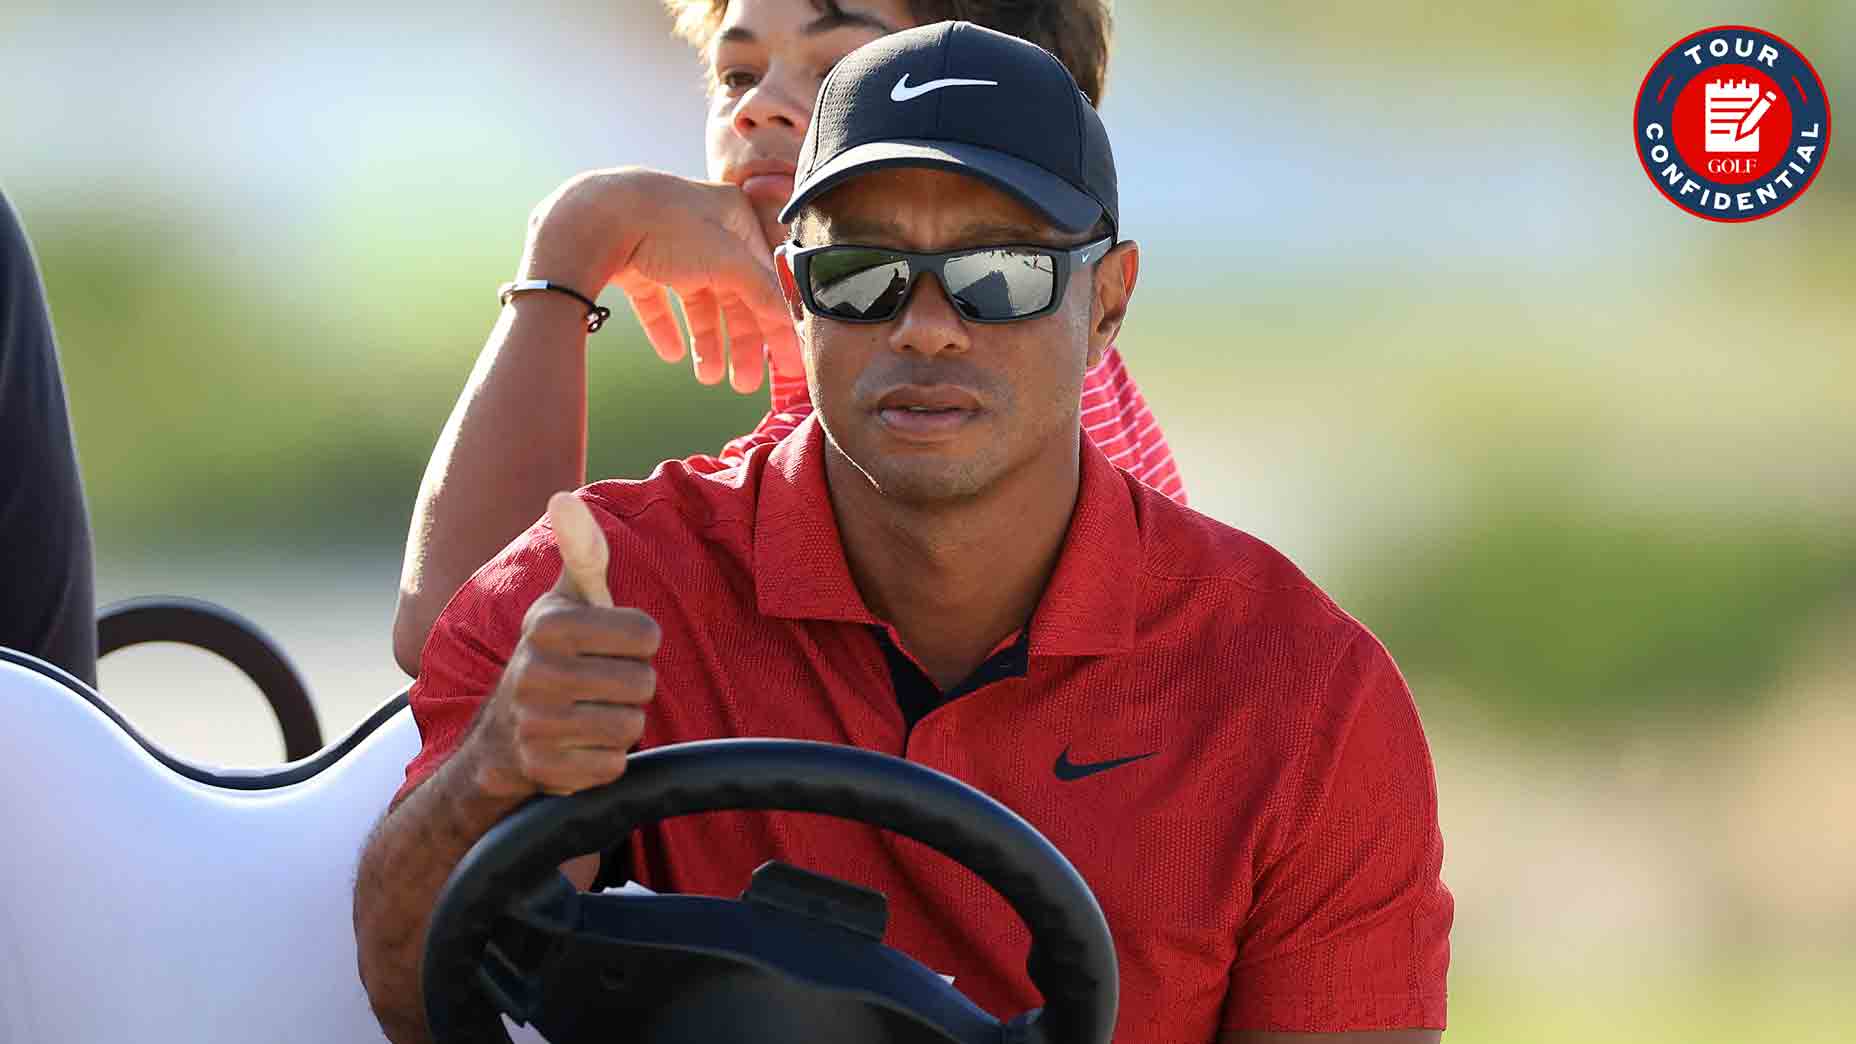 Tour Confidential Tiger Woods Return Paul Azinger S Nbc Exit